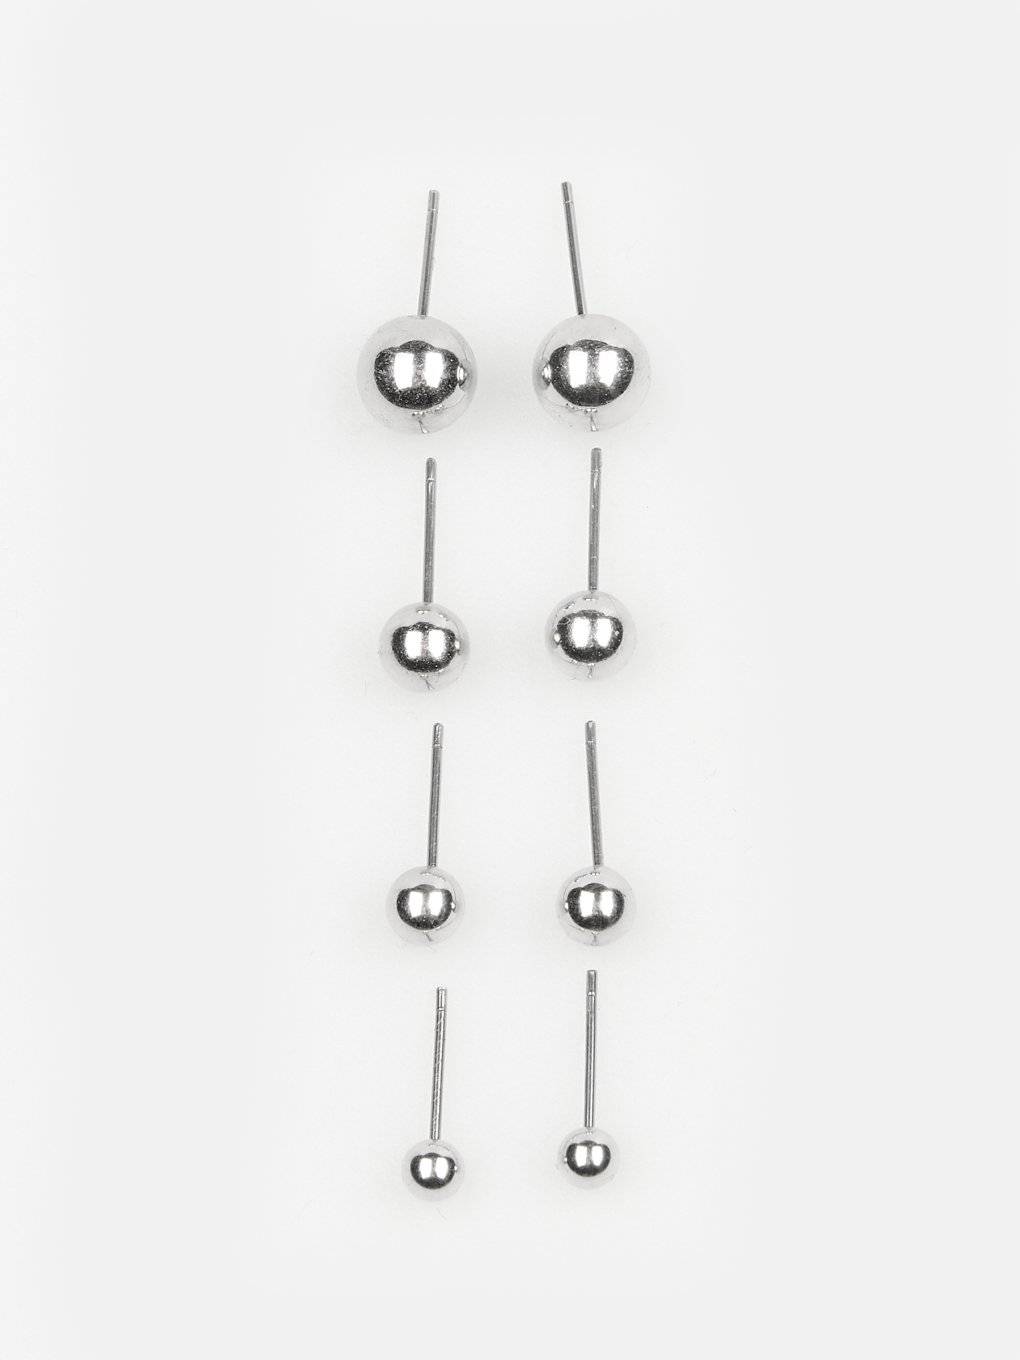 Set of basic metallic earrings